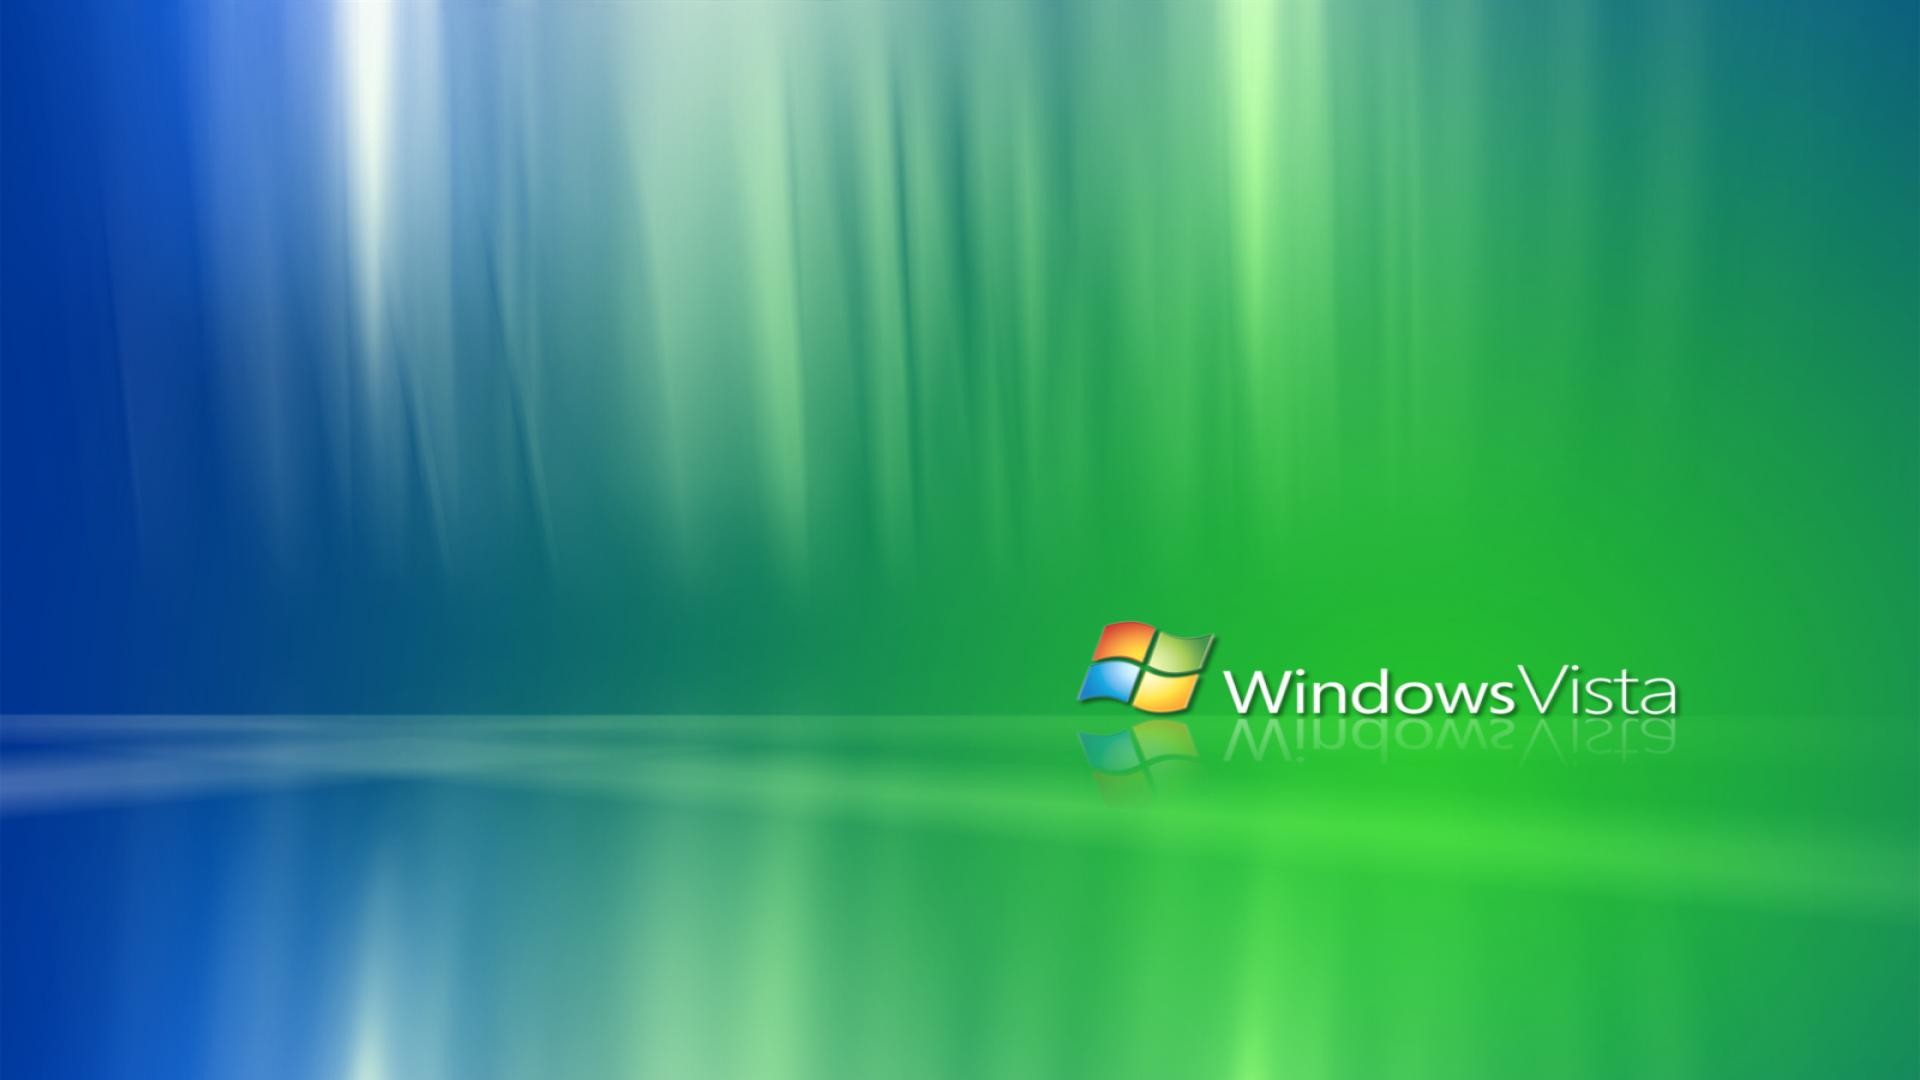 Windows Vista Wallpaper Hd , HD Wallpaper & Backgrounds